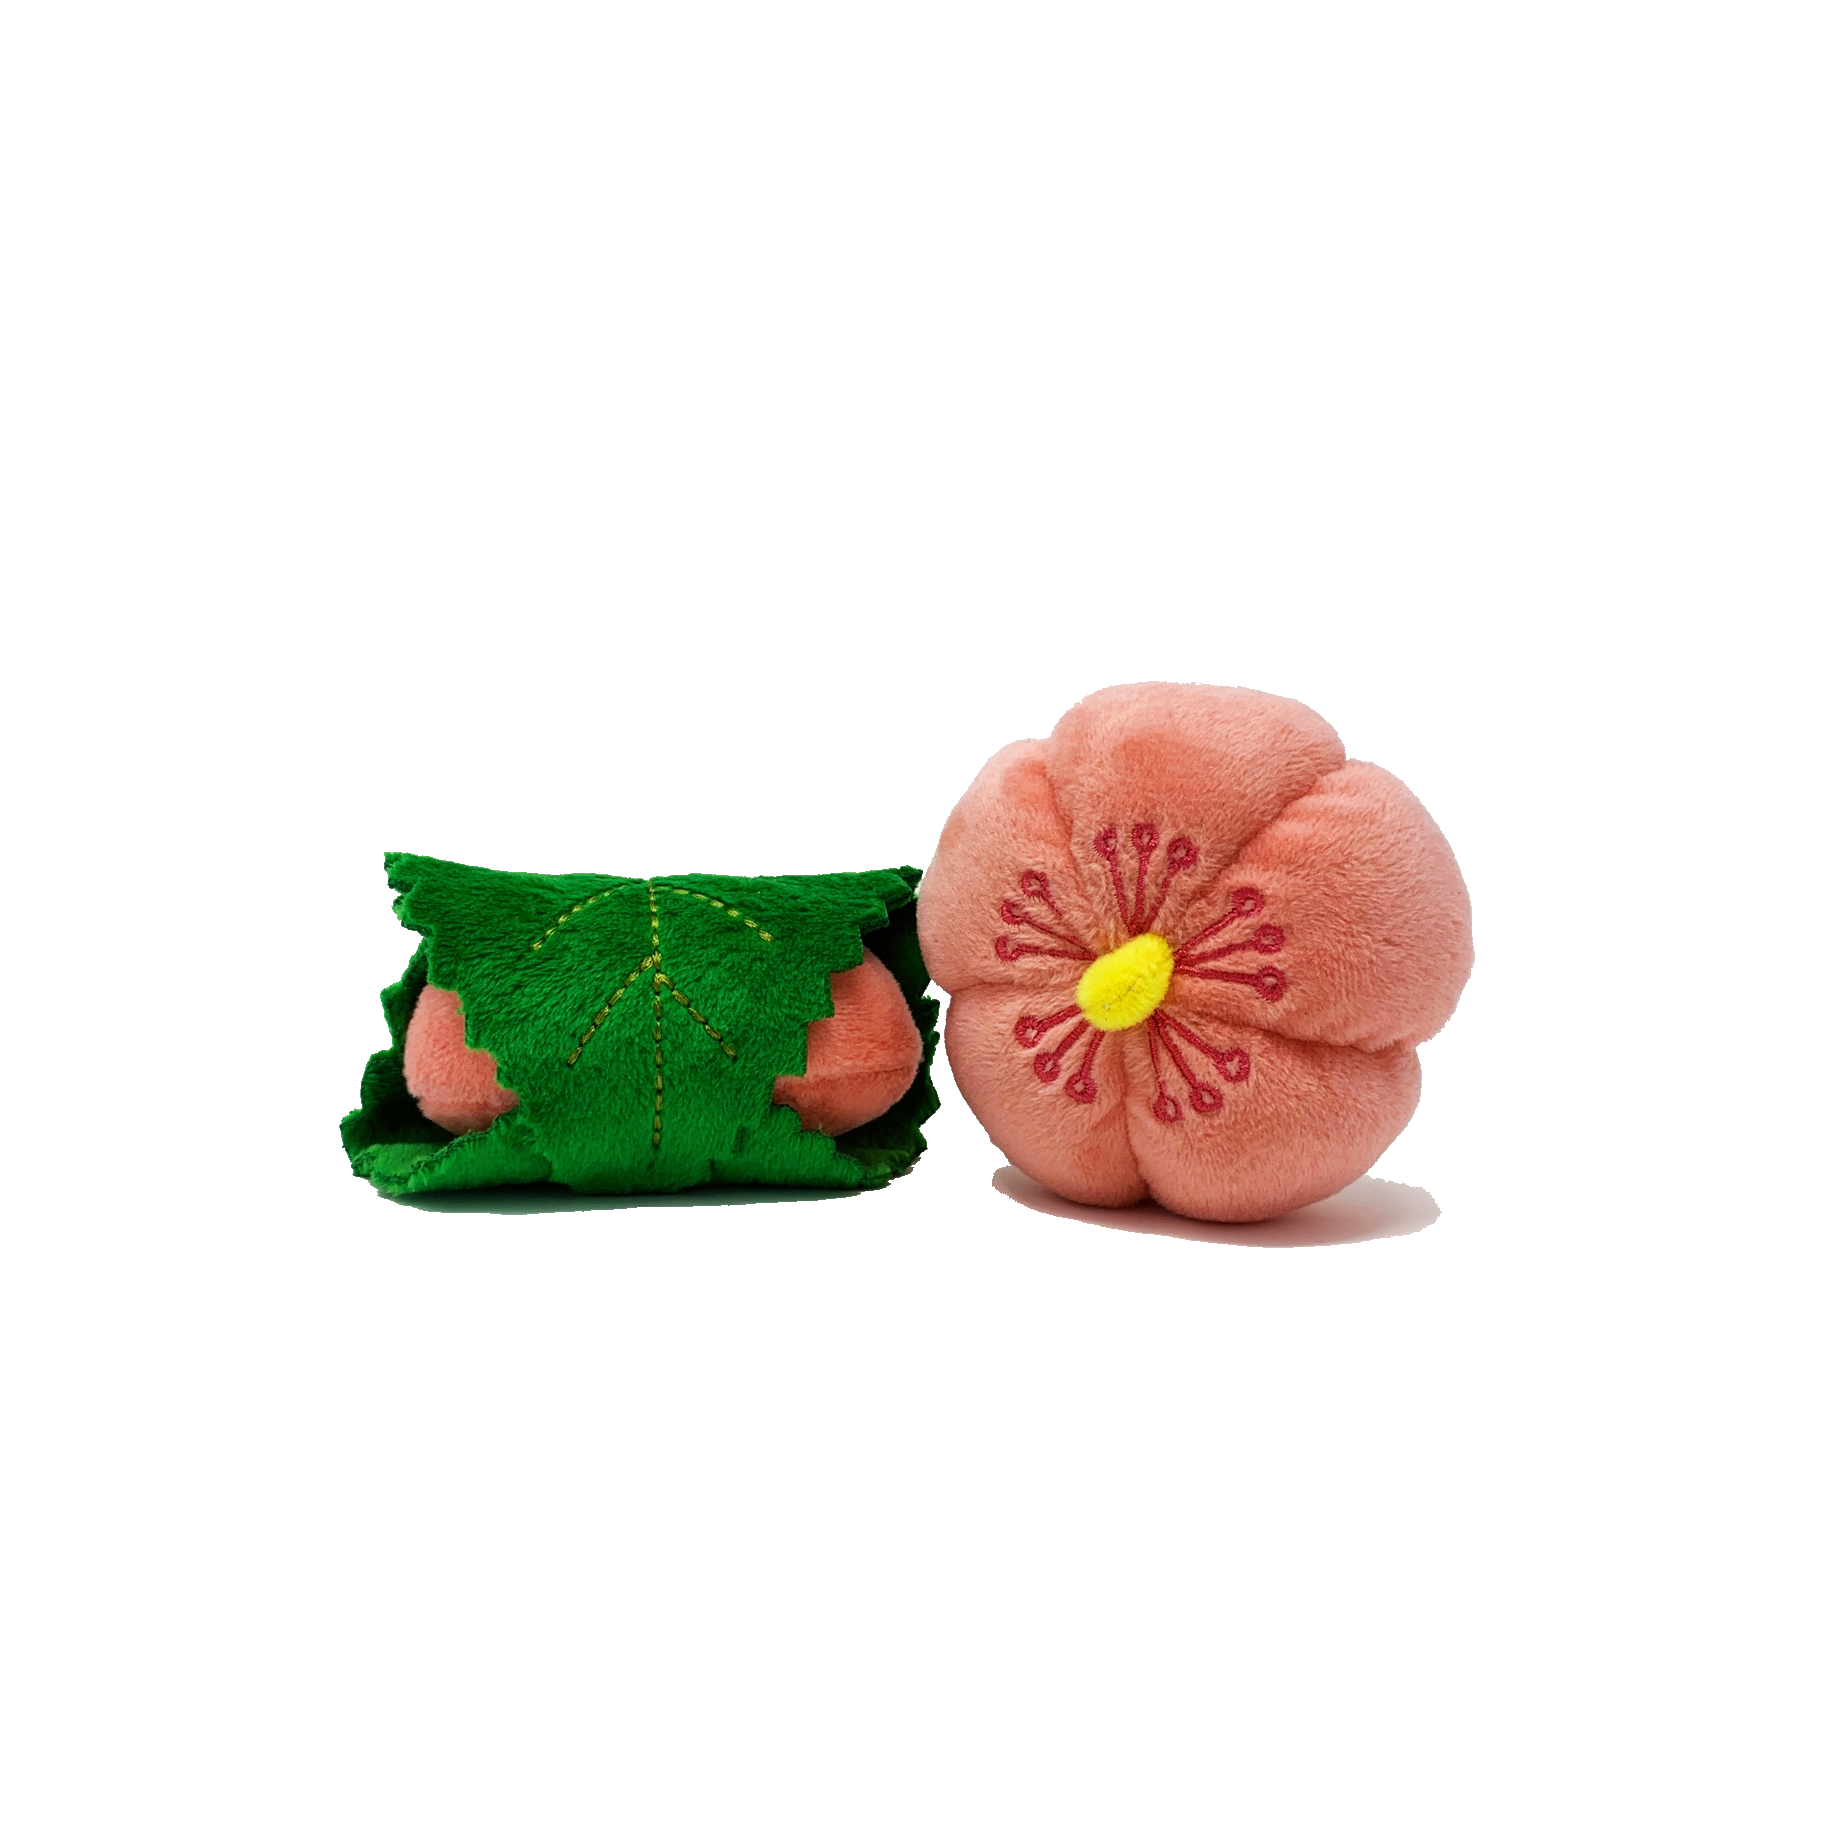 MunchieCat Sakura (Cherry Blossom) Flower Wagashi Catnip Toy